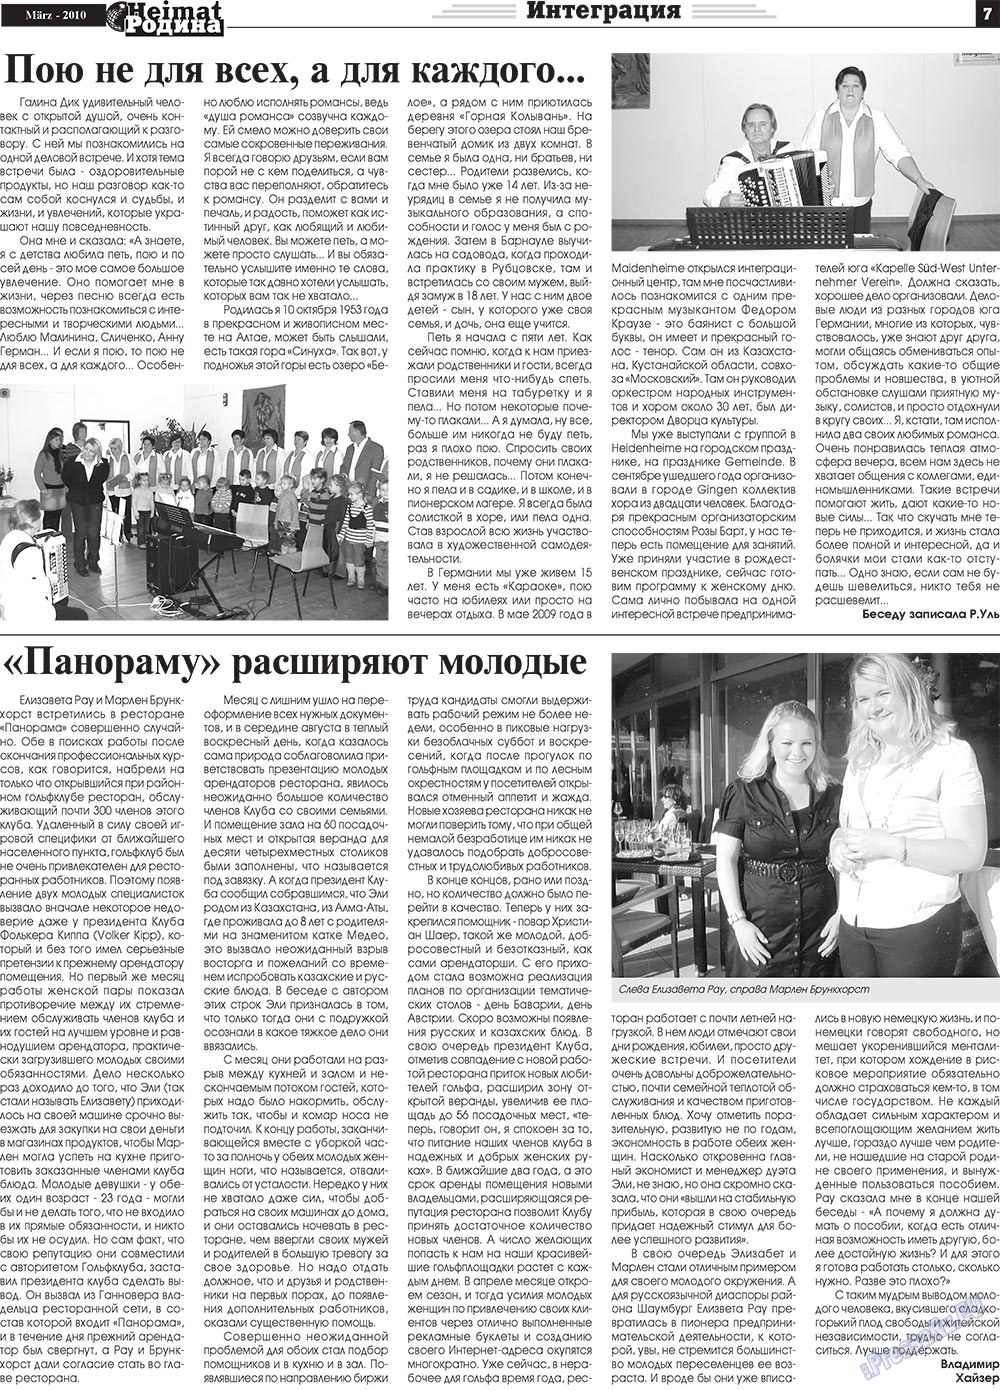 Heimat-Родина (газета). 2010 год, номер 3, стр. 7